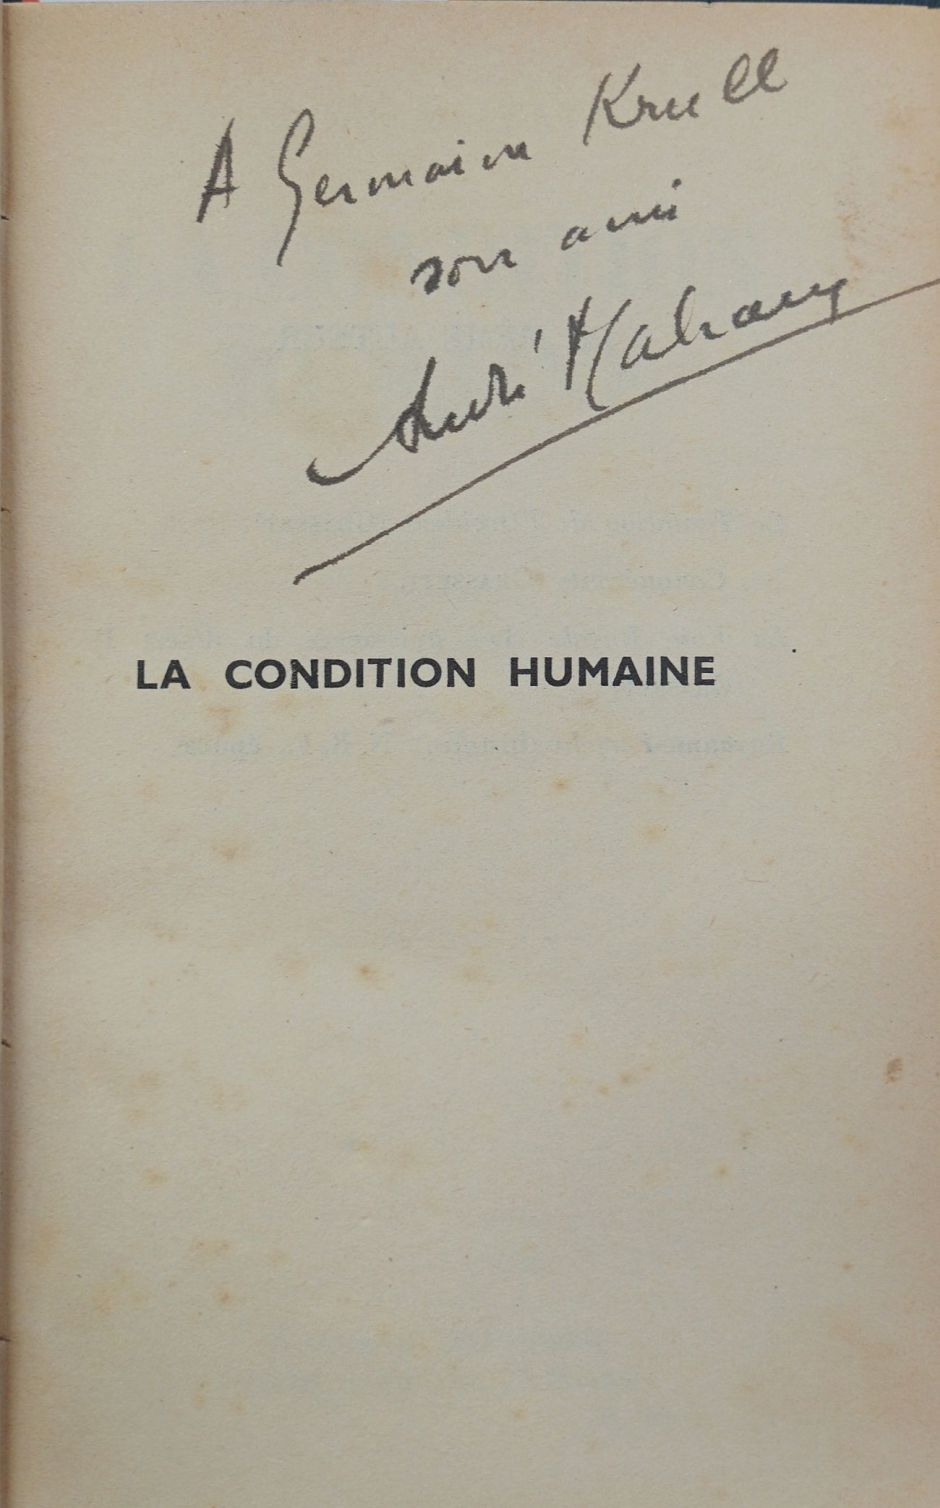 Lot 3296, Auction  115, Malraux, André, La condition humaine